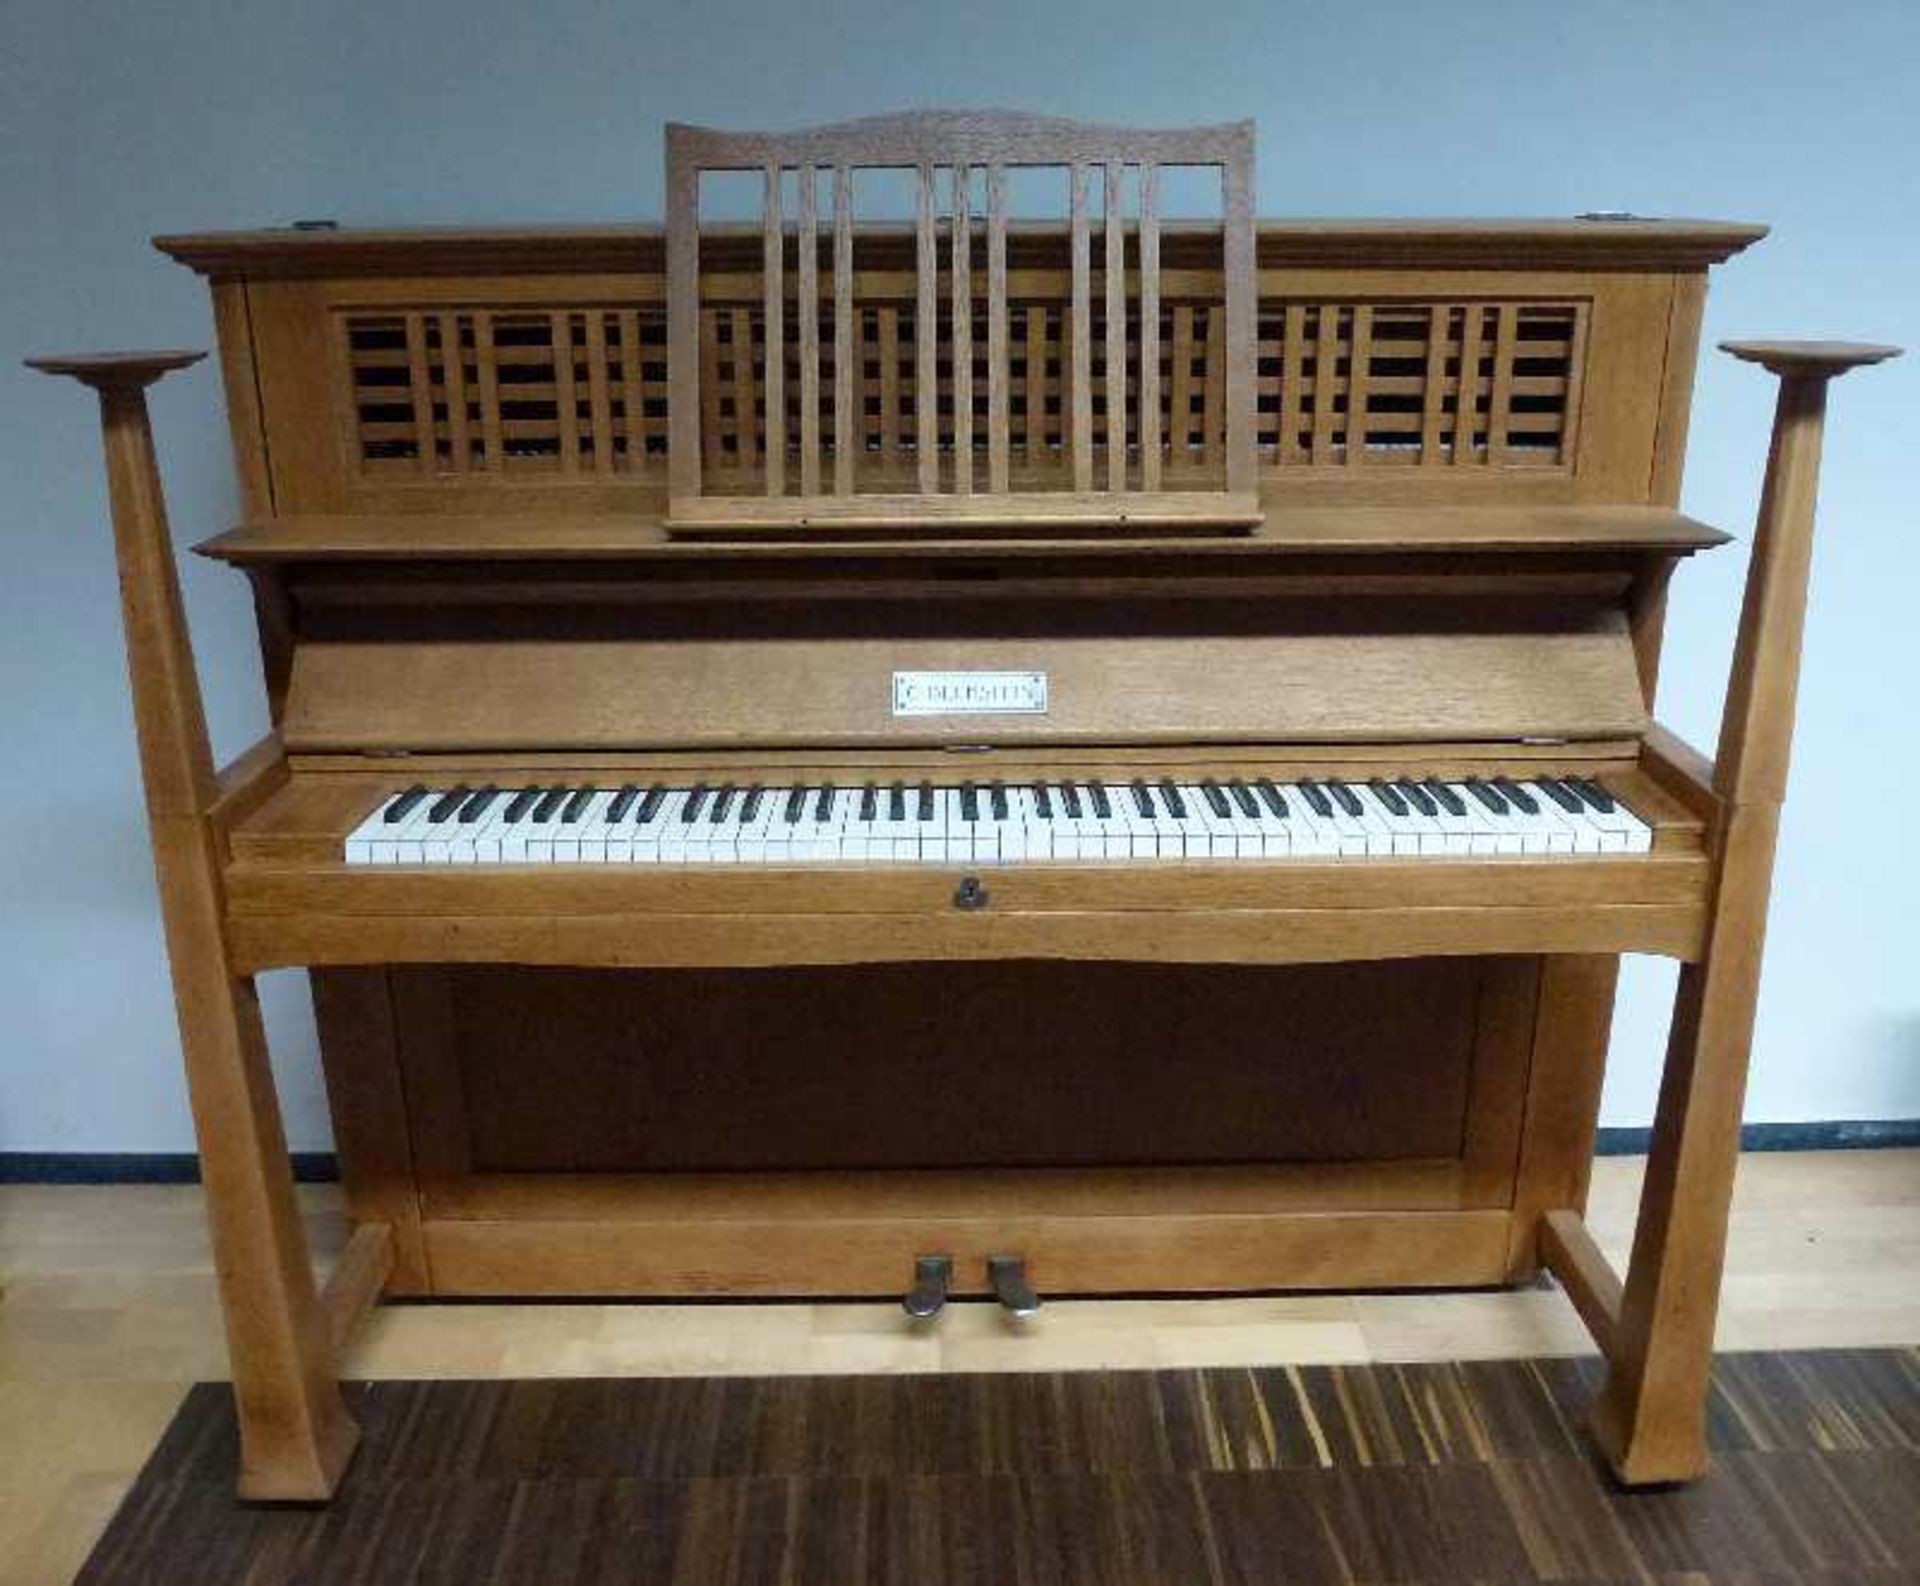 Jugendstil-Klavier, C. Bechstein, Design Walter Cave, 1910 helle Eiche, offener Oberrahmen, sich